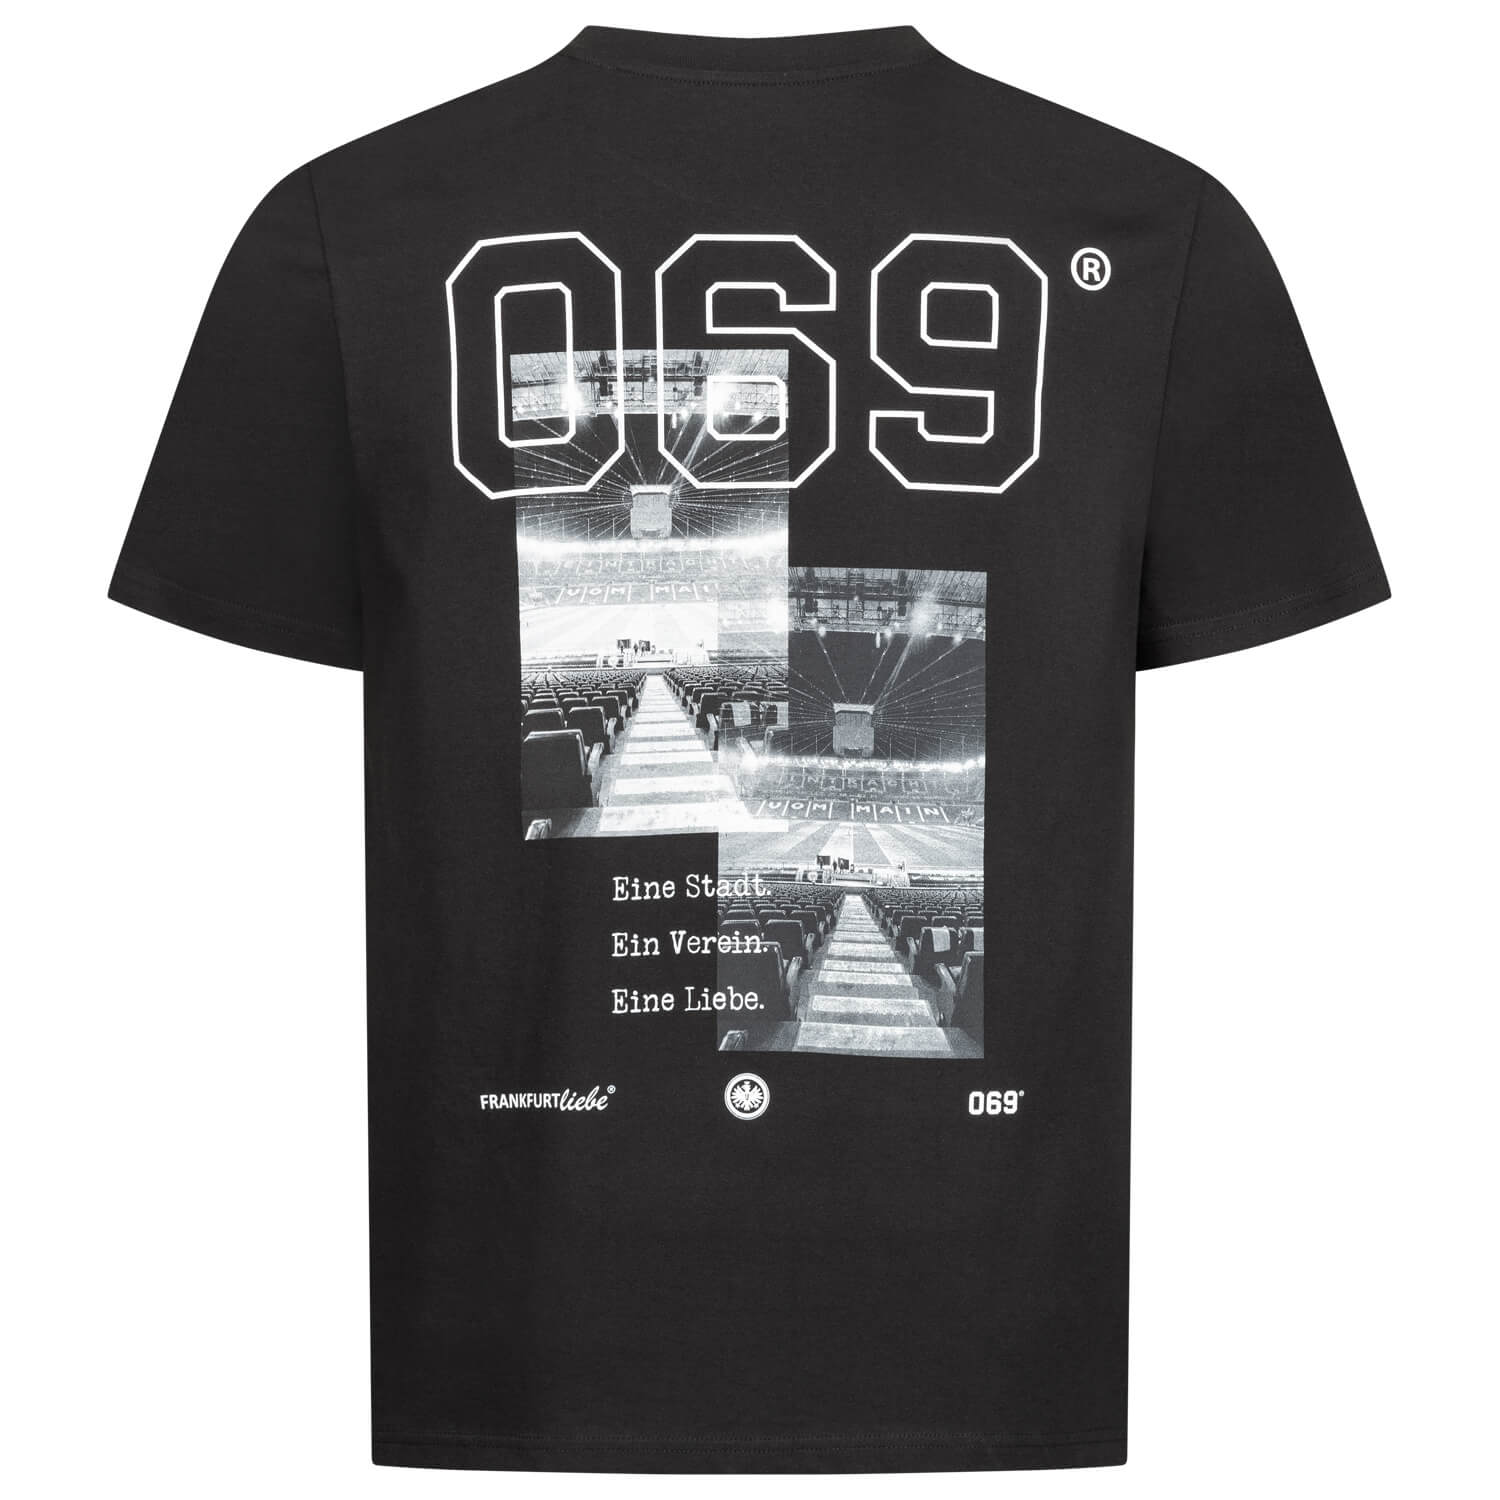 Bild 2: T-Shirt Ein Verein Schwarz